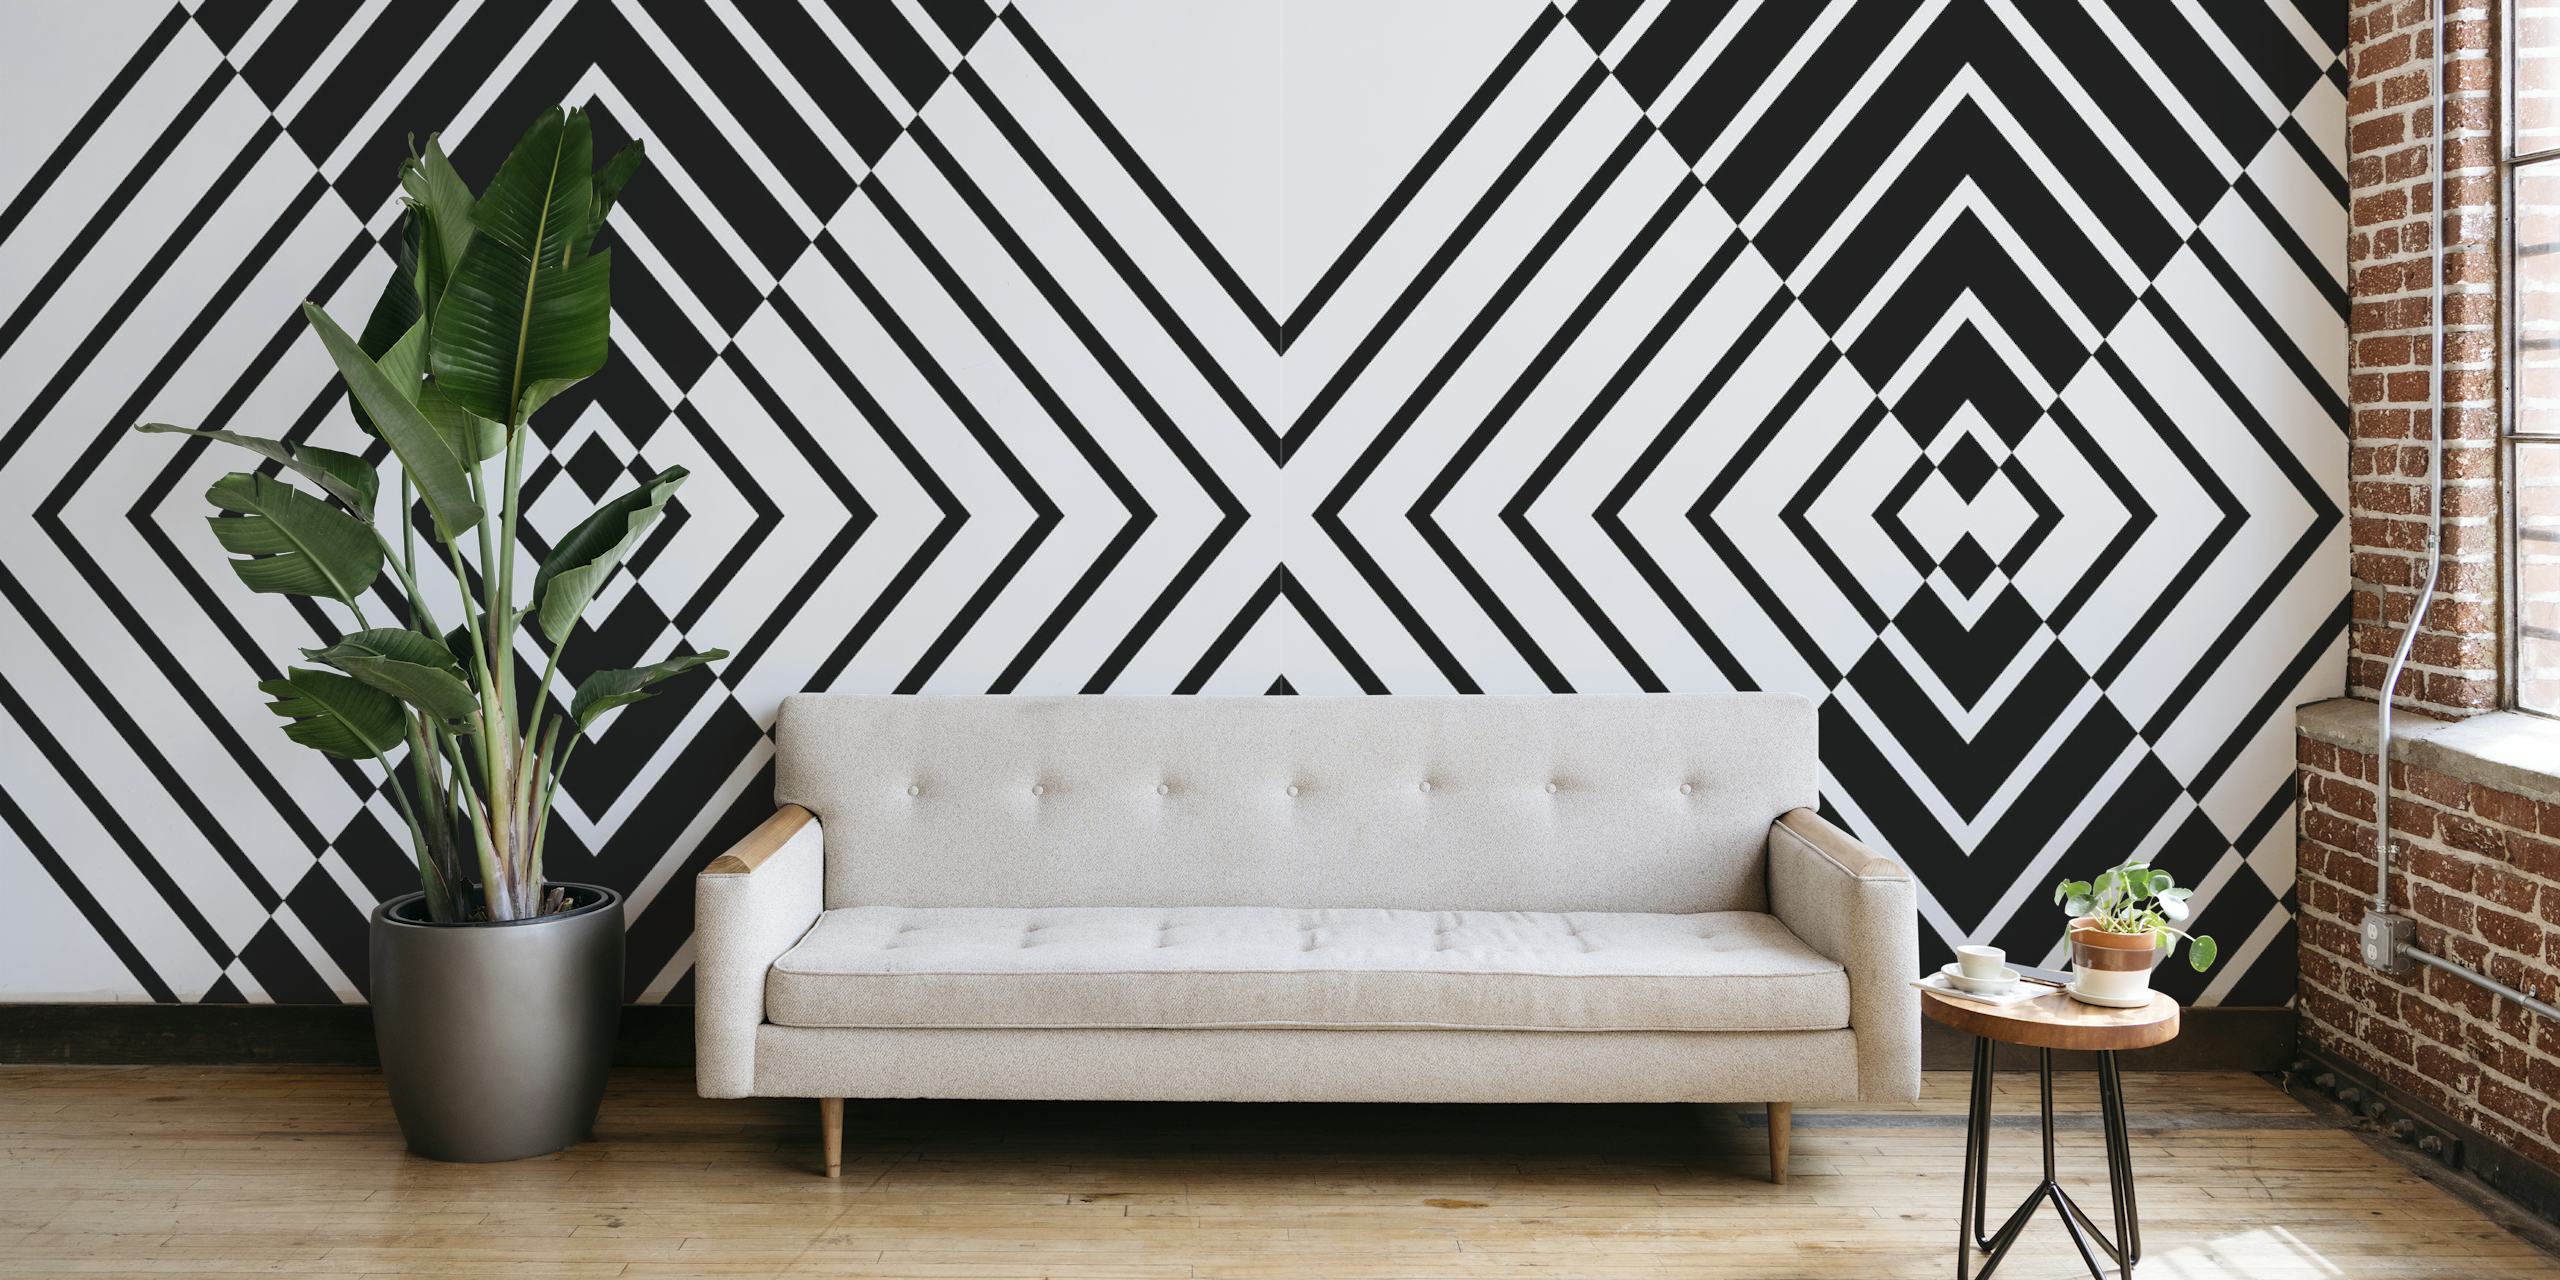 Schwarz-weiße Fototapete mit geometrischem Muster, die ein kühnes abstraktes Design schafft